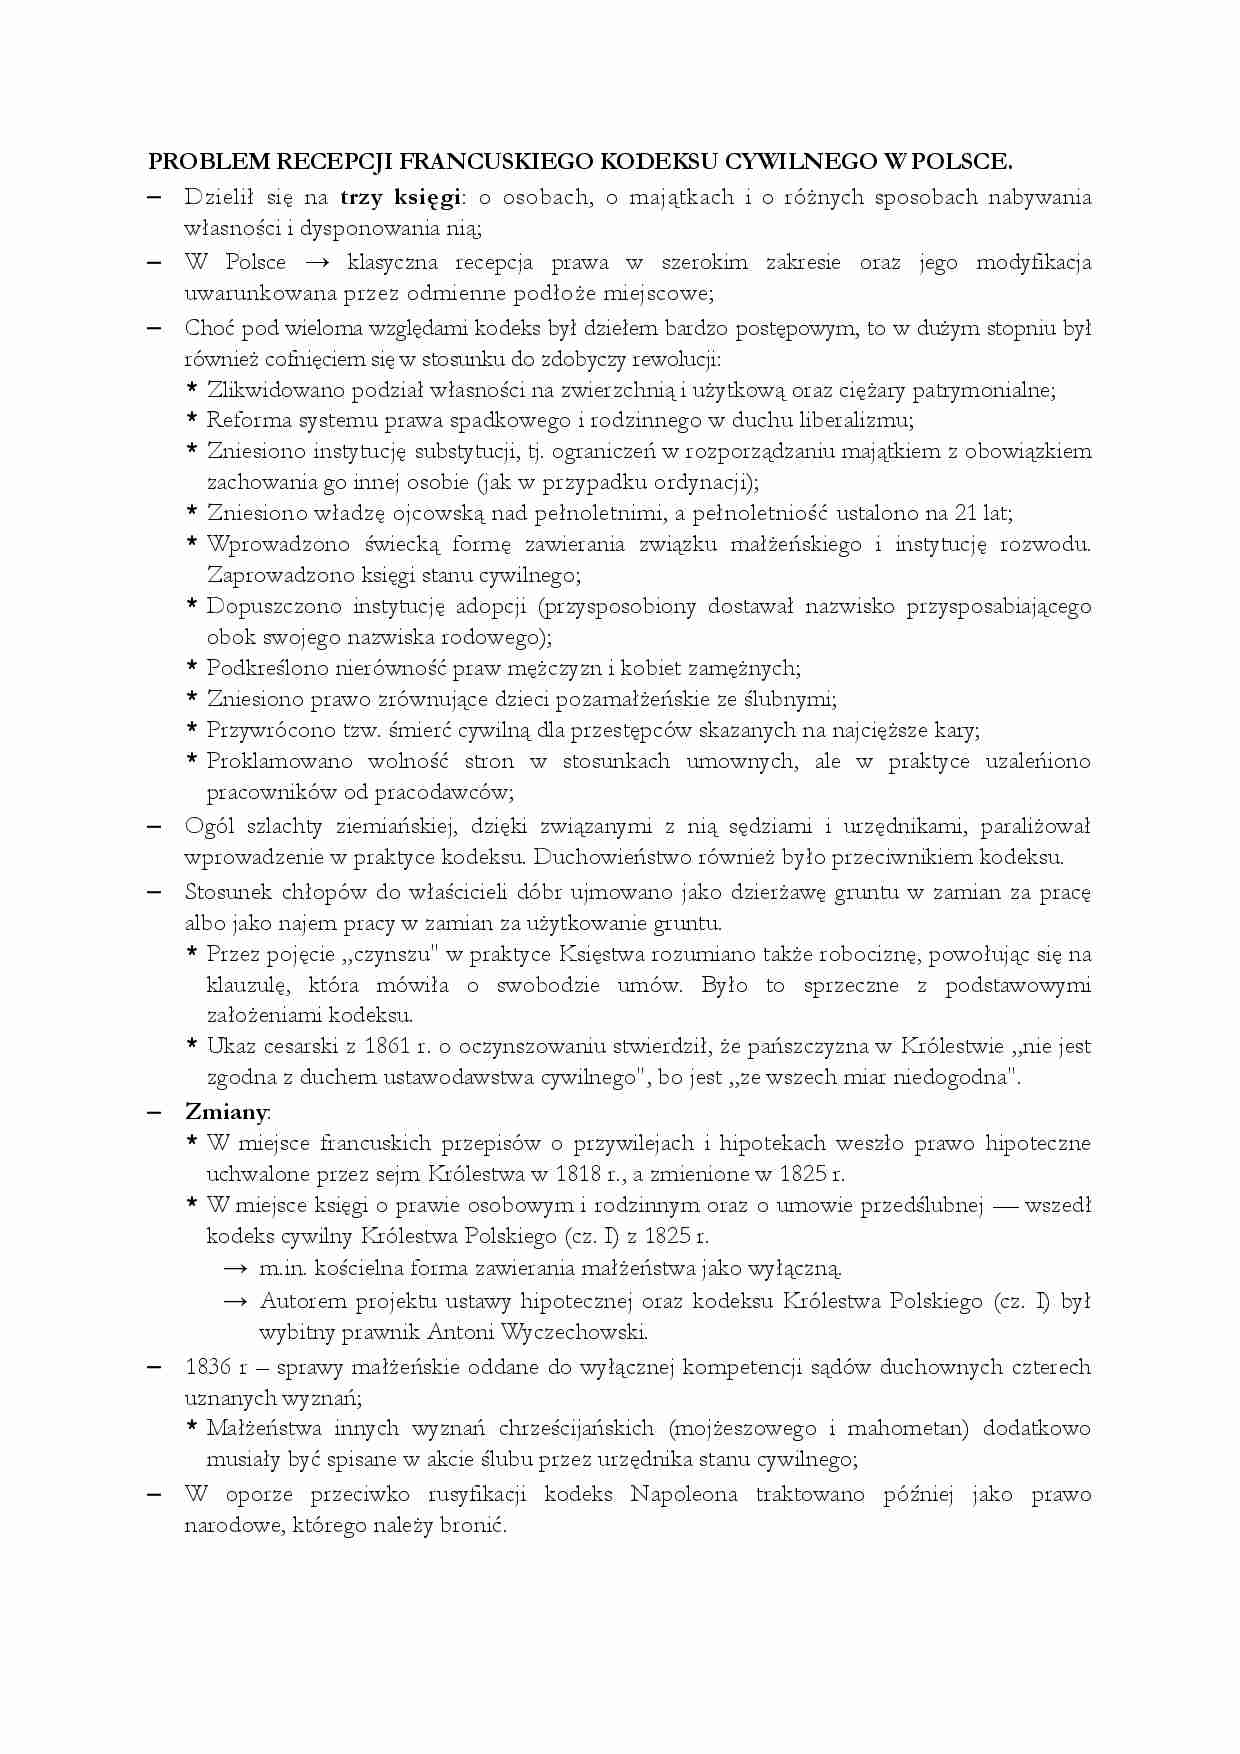 Problem recepcji francuskiego kodeksu cywilnego w Polsce - wykład - strona 1